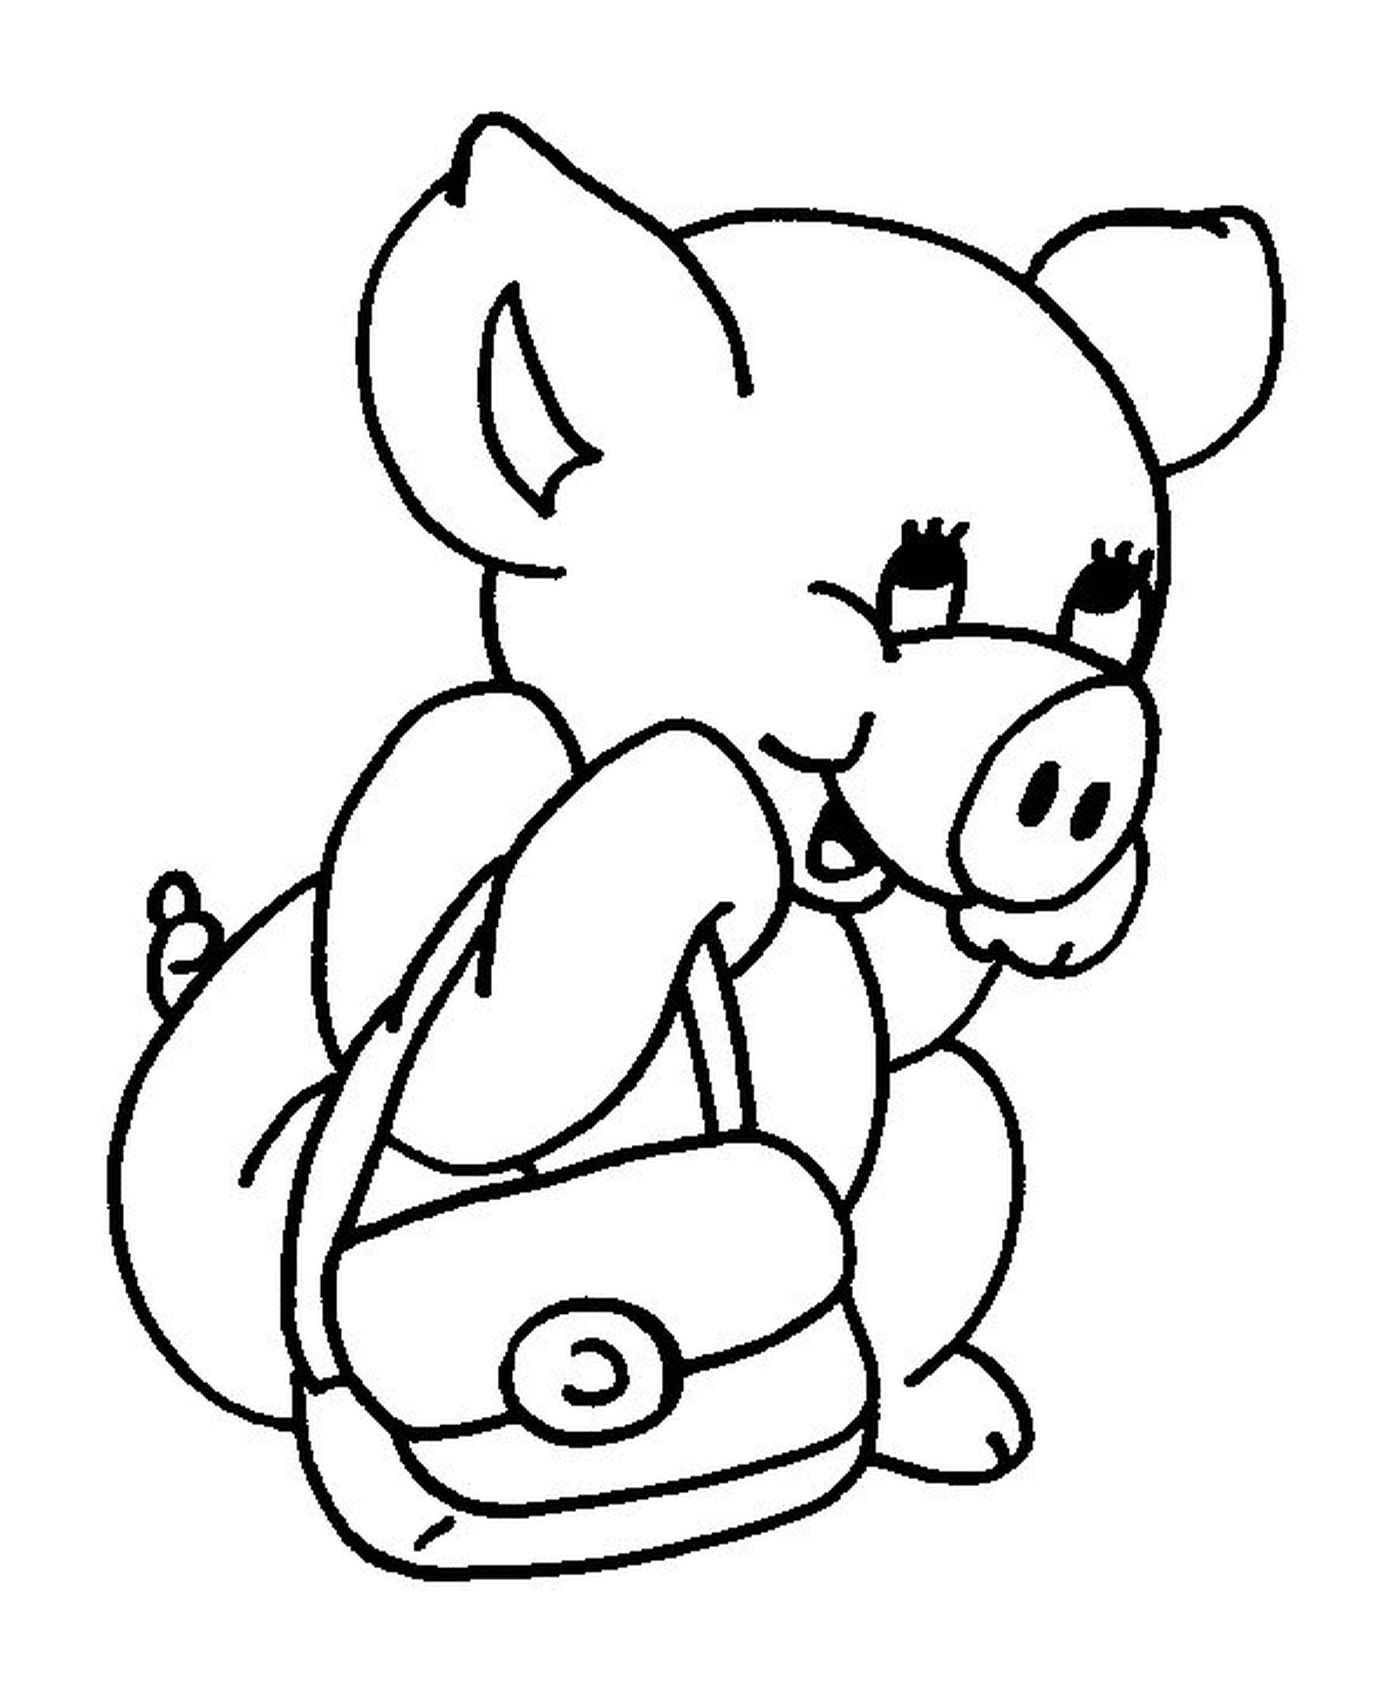  Un maiale che va a scuola con una borsa 